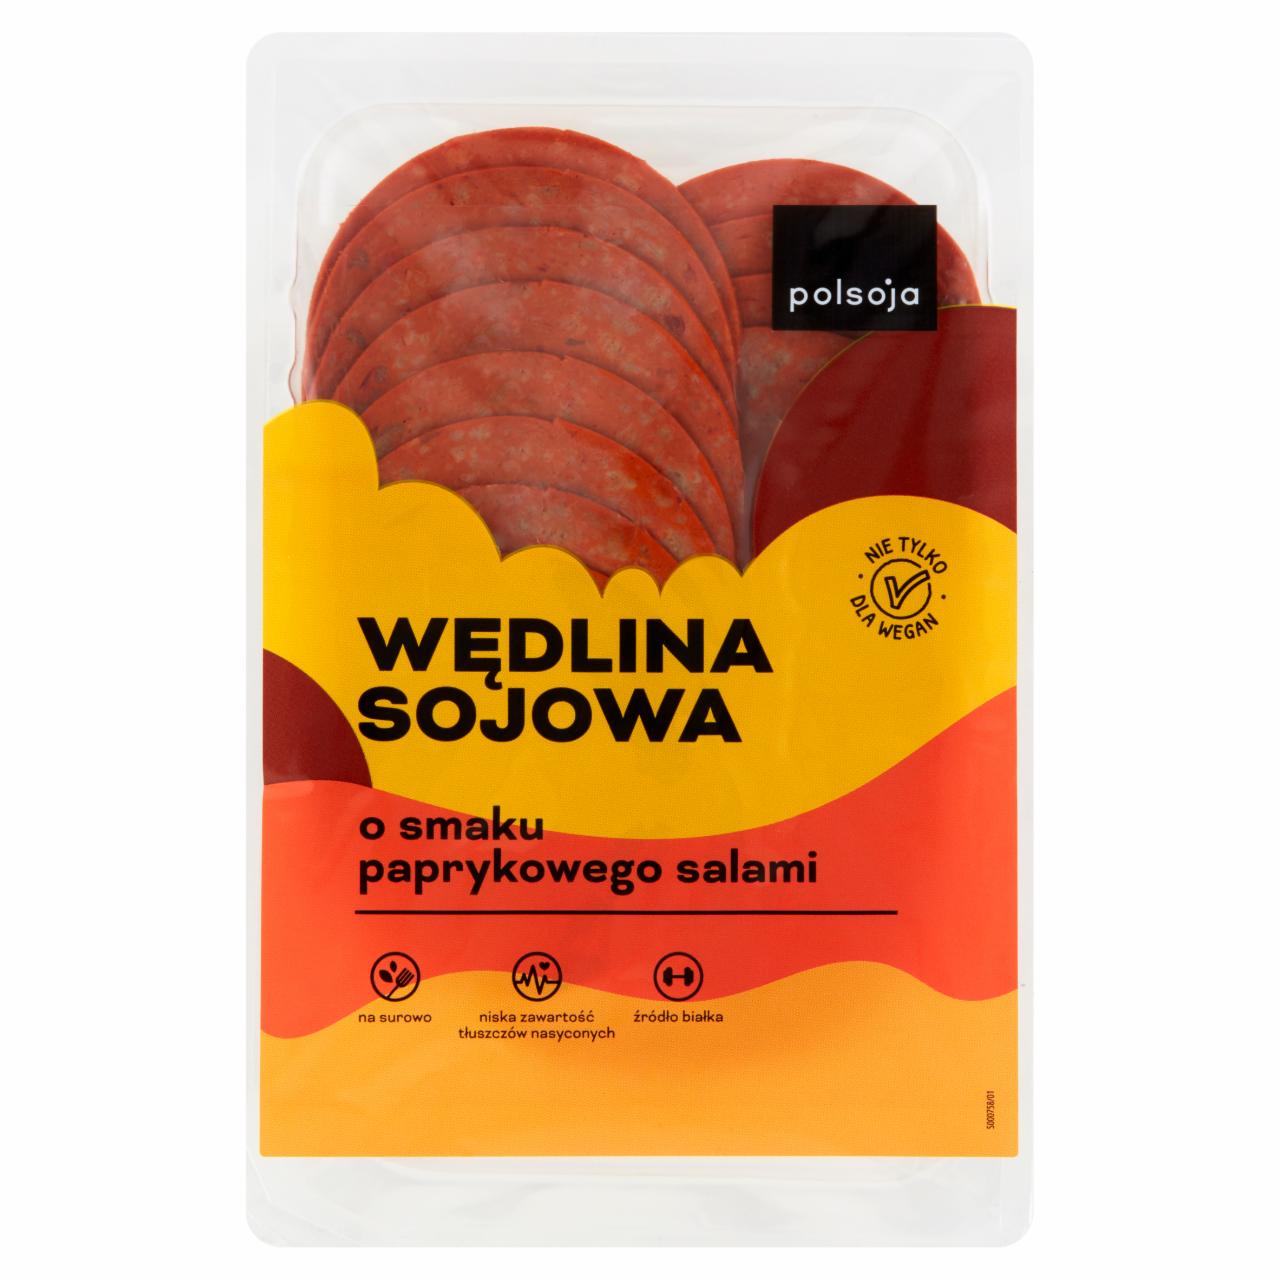 Zdjęcia - Polsoja Wędlina sojowa o smaku paprykowego salami 90 g